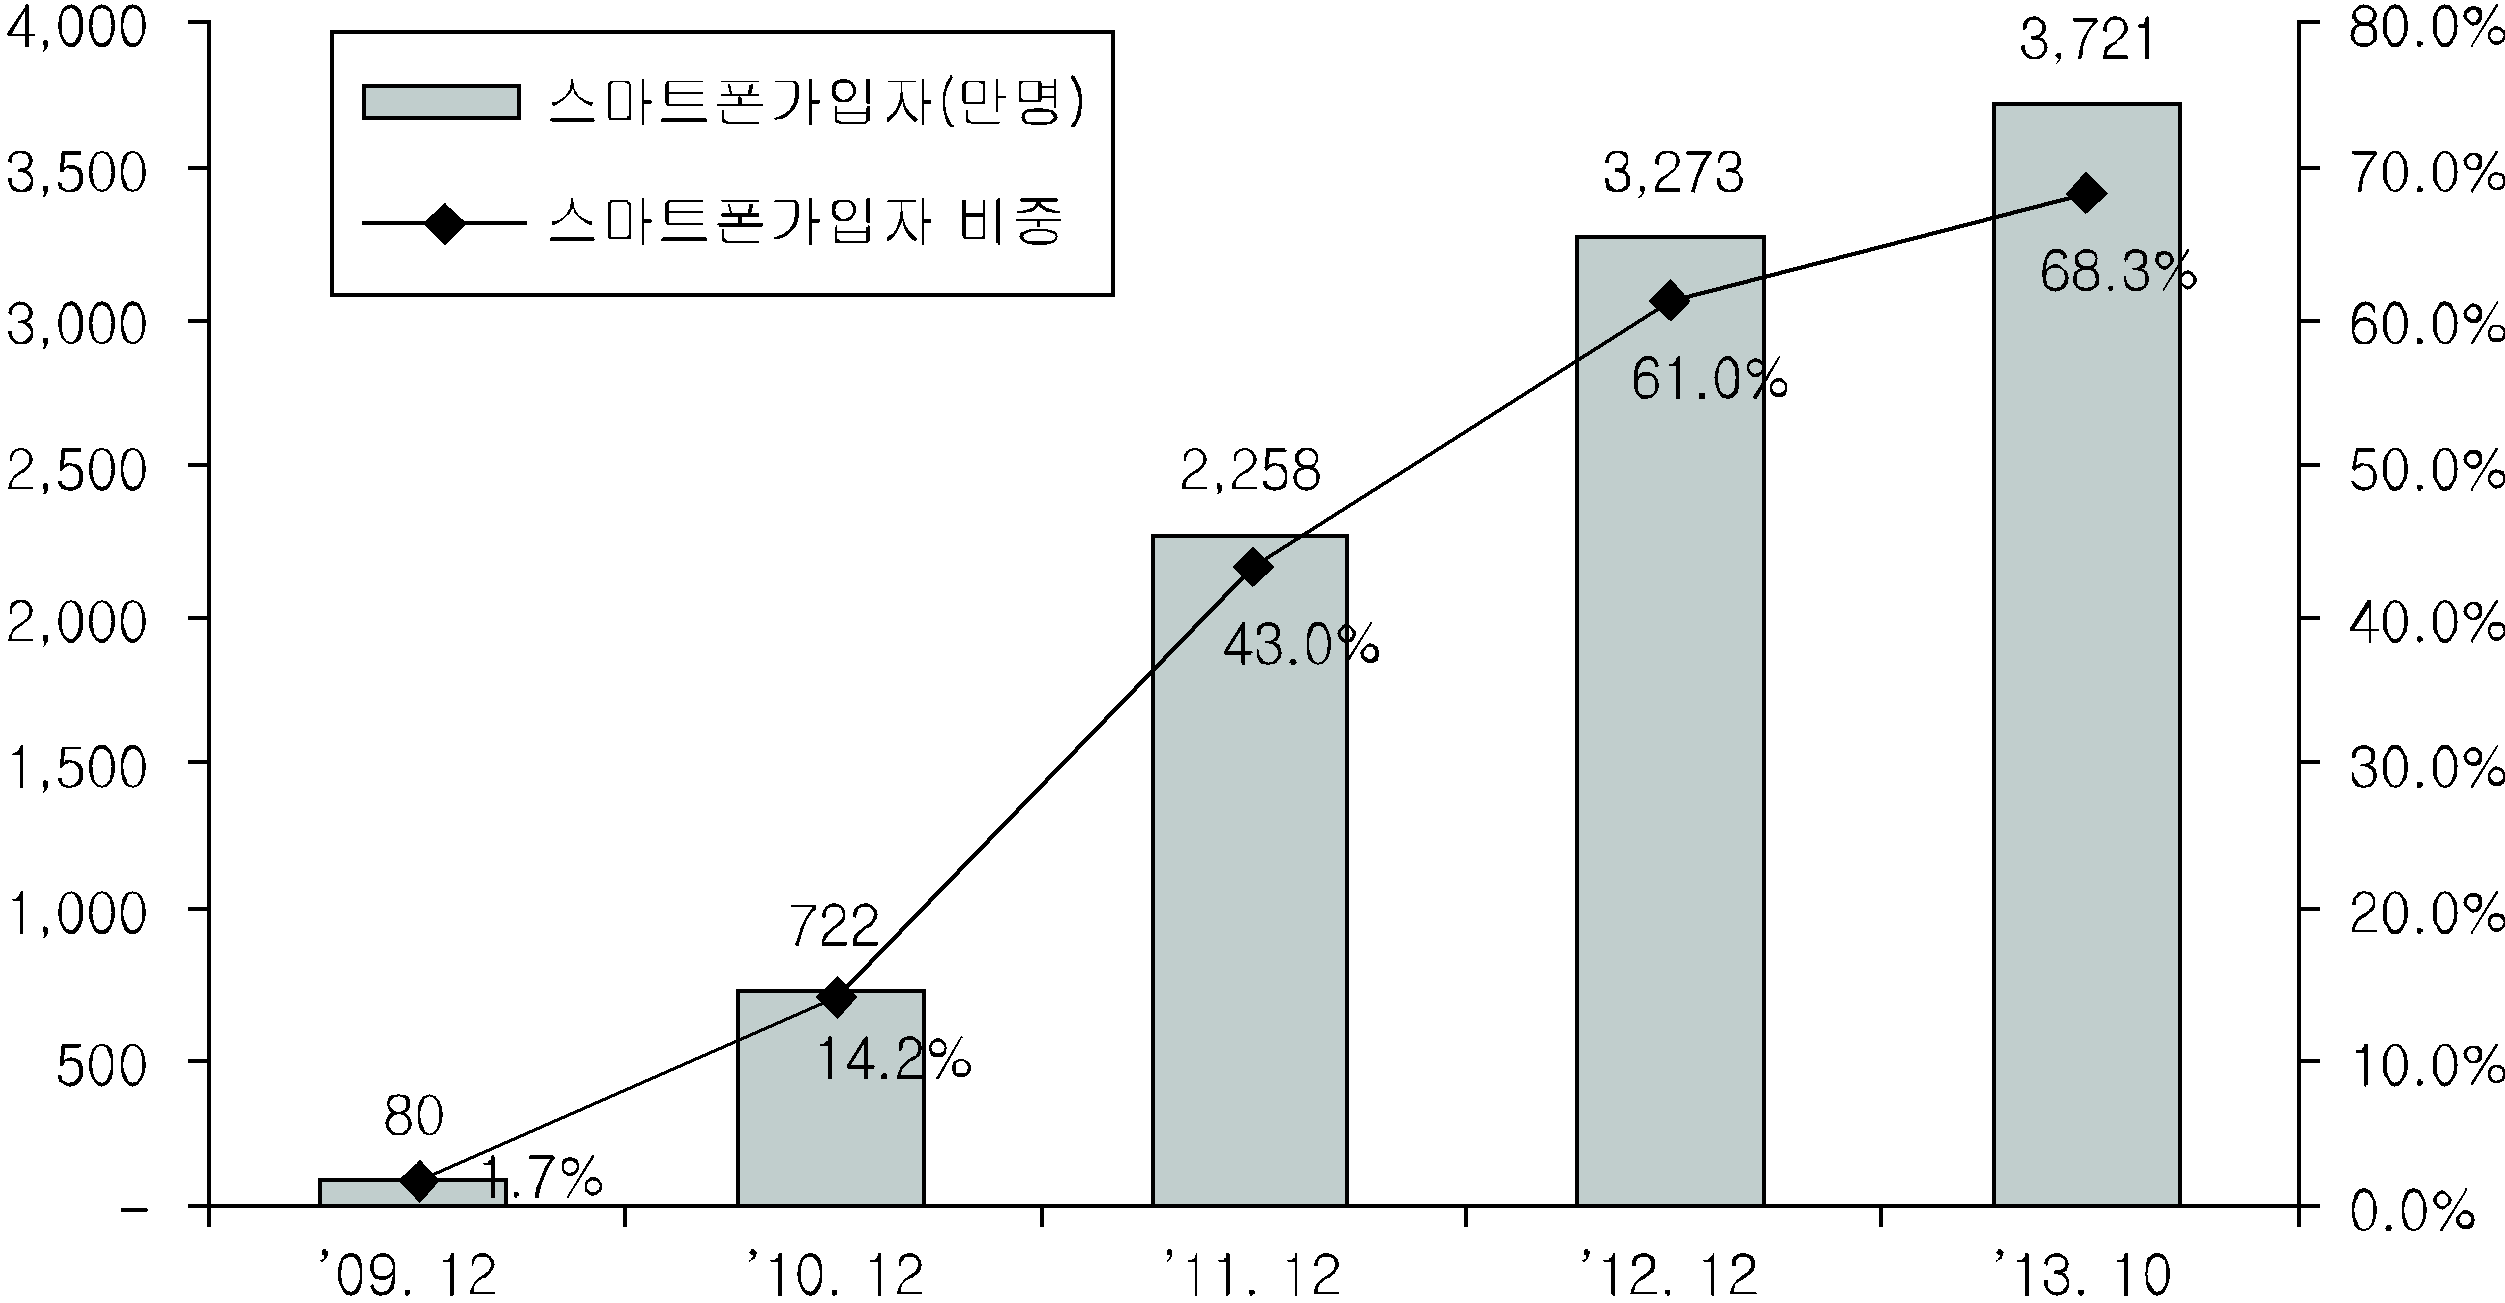 국내 스마트폰 보급률 추이(2009～2013. 10)